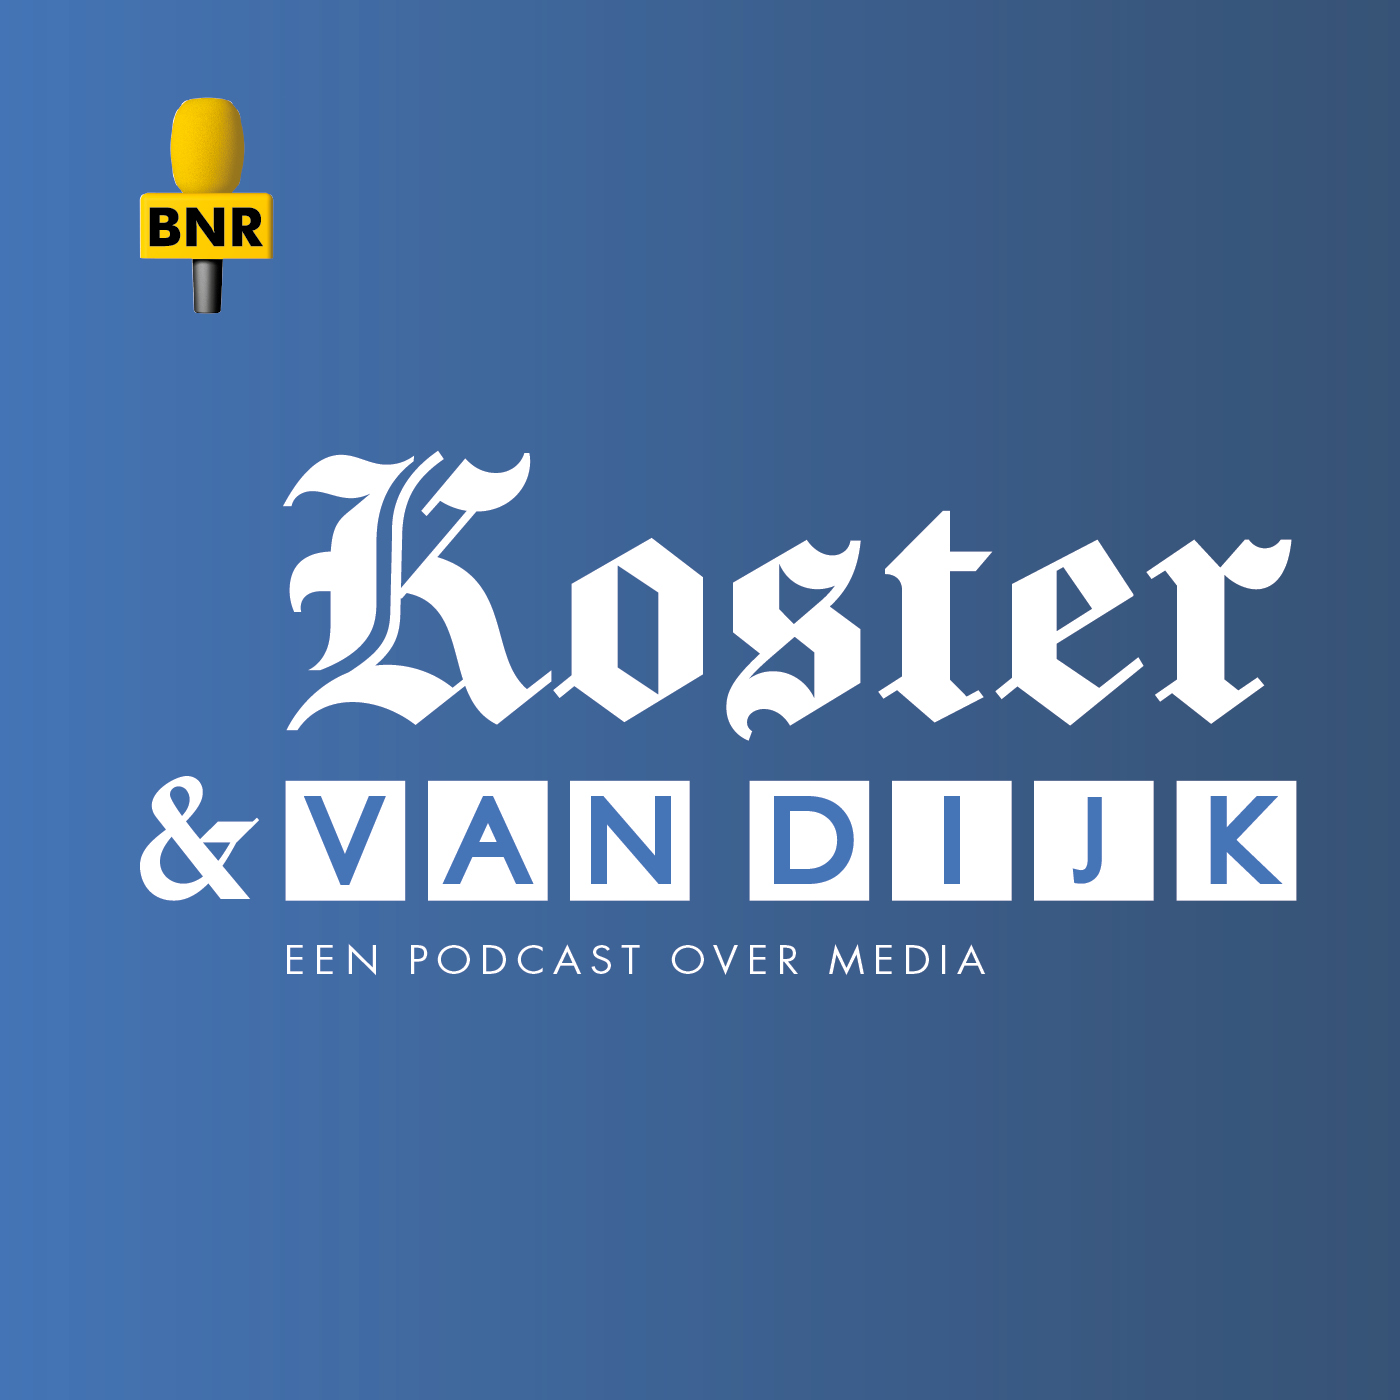 Koster & Van Dijk: daar is het staartje.